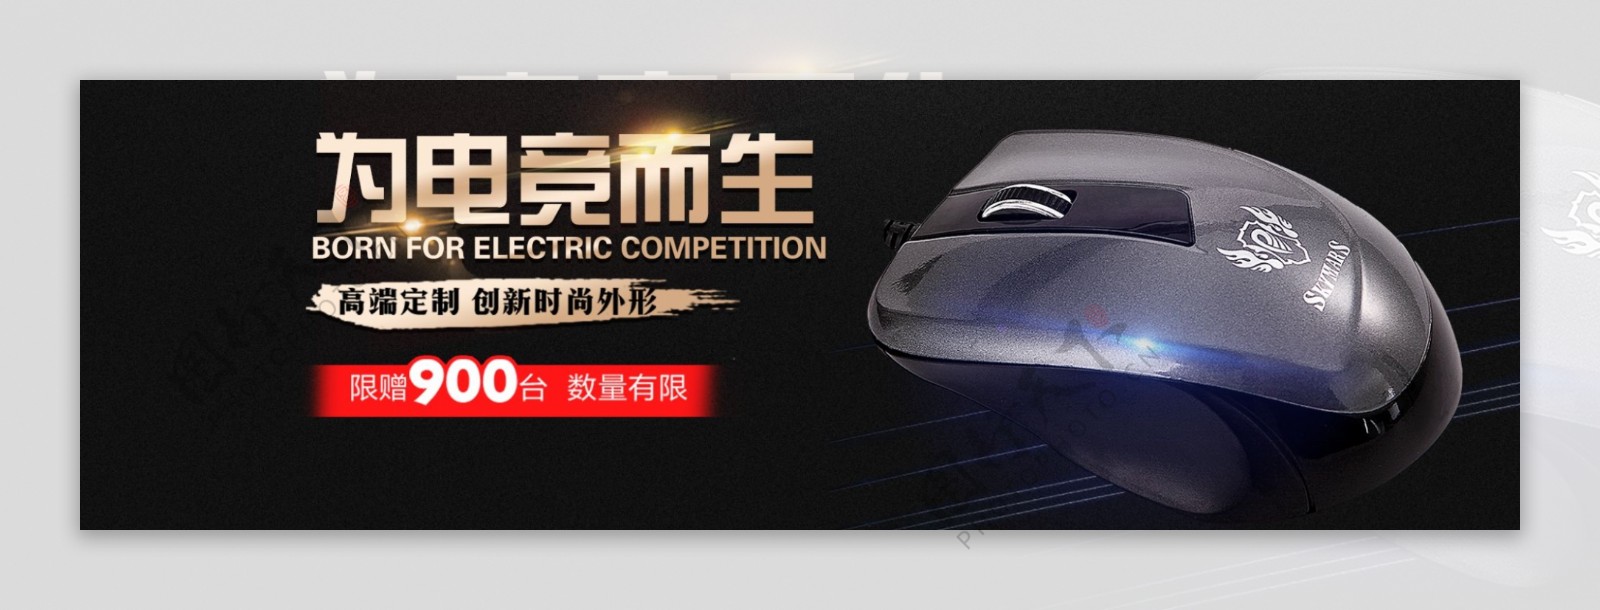 数码电脑鼠标促销淘宝banner